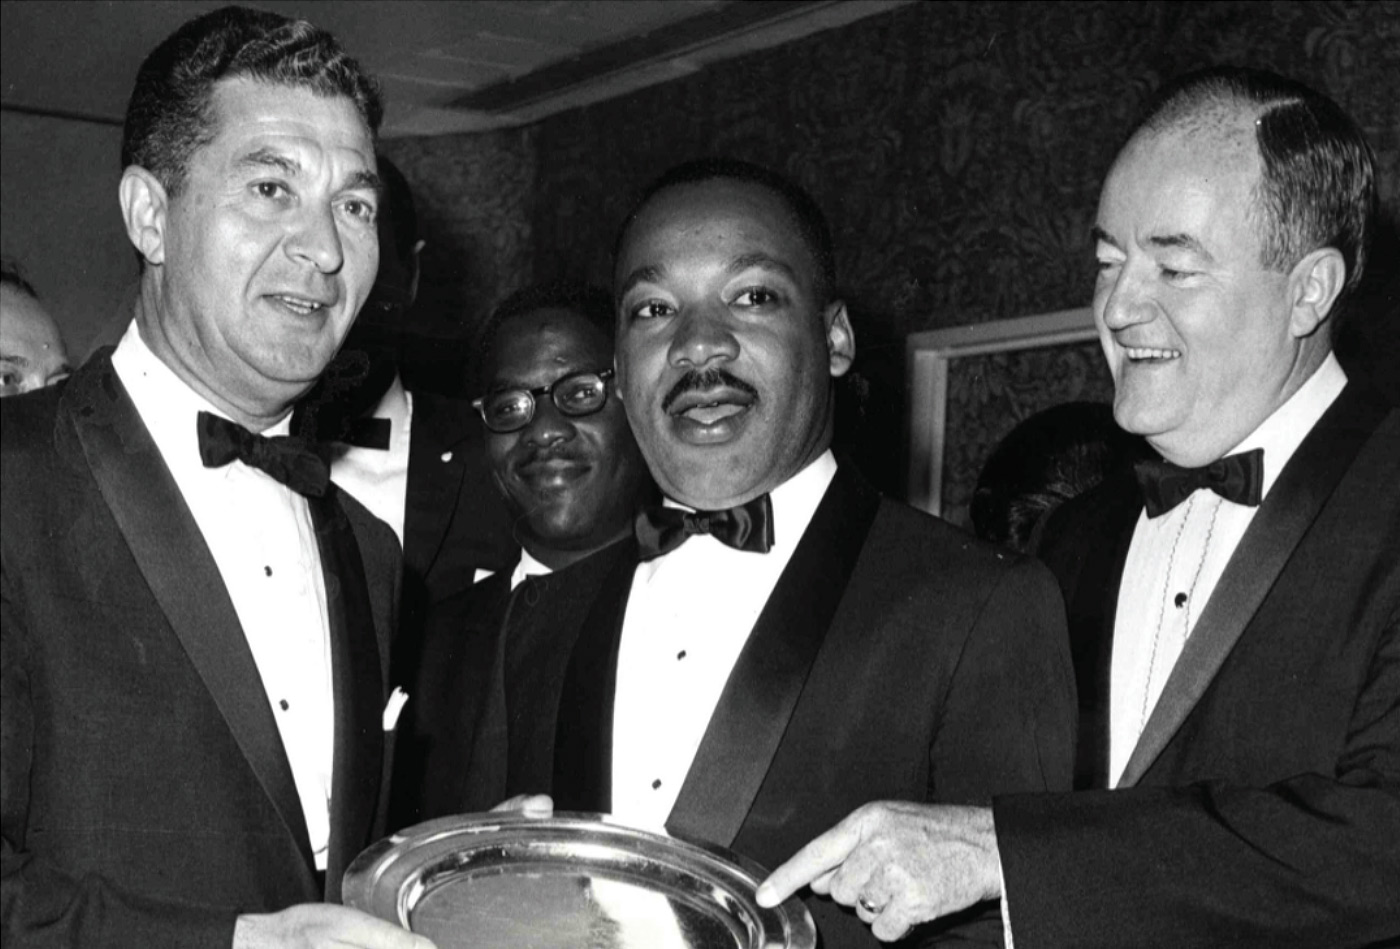 AJC ANNUAL MEETING, 1965 Remise du prix AJC American Liberties Medallion à Martin Luther King Jr. par Sol M. Linowitz, président du Comité exécutif d’AJC et Hubert H. Humphrey, Vice-président des États-Unis.